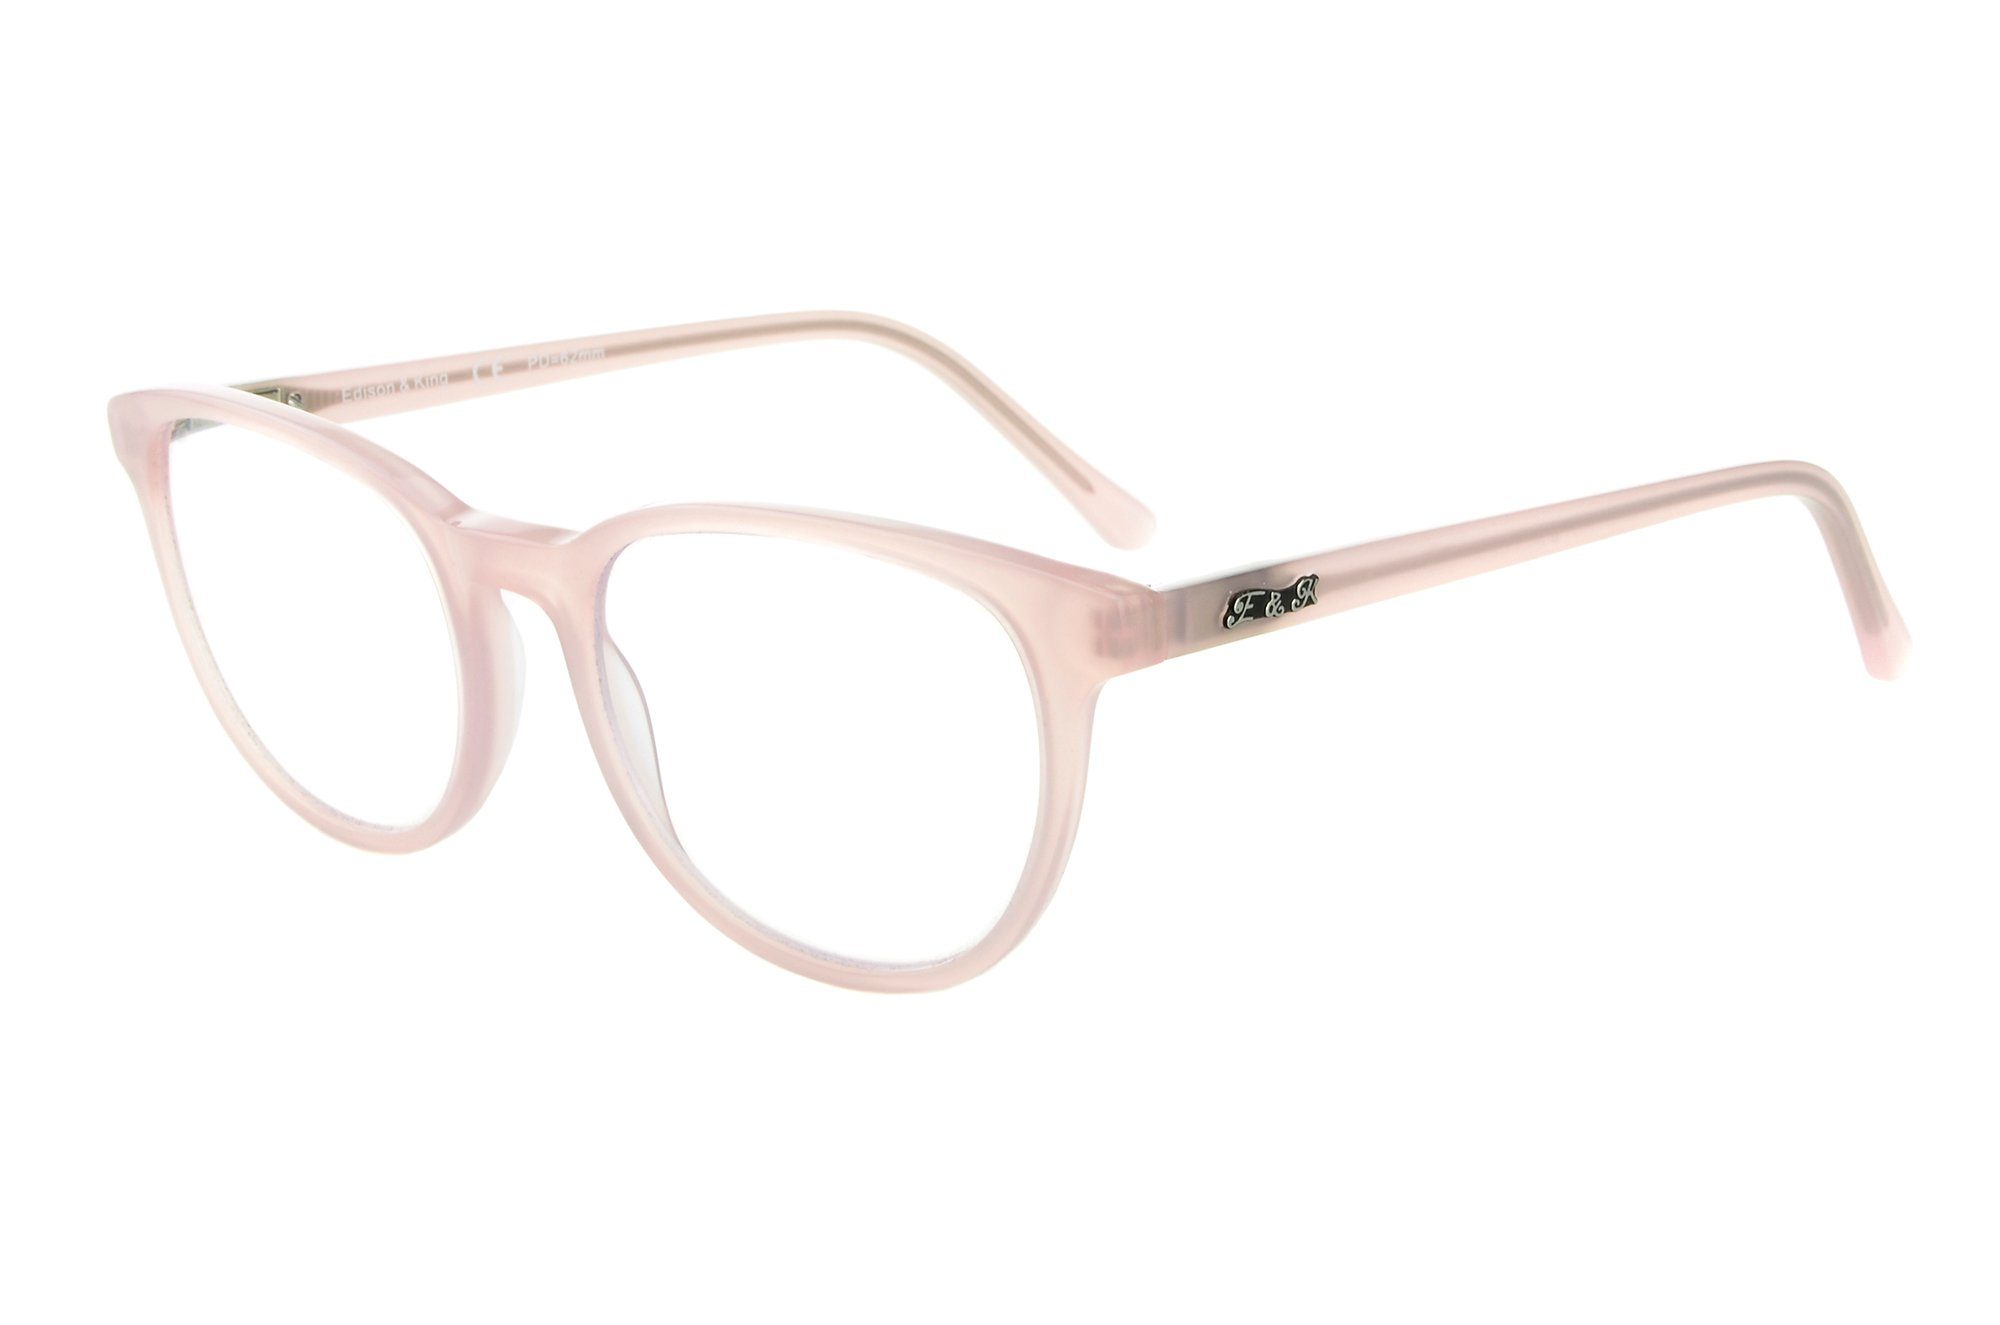 Edison & King Lesebrille »Soul Mate«, Moderne Azetatbrille mit großen  Gläsern in 4 wundervollen glänzenden Nude-Tönen. online kaufen | OTTO